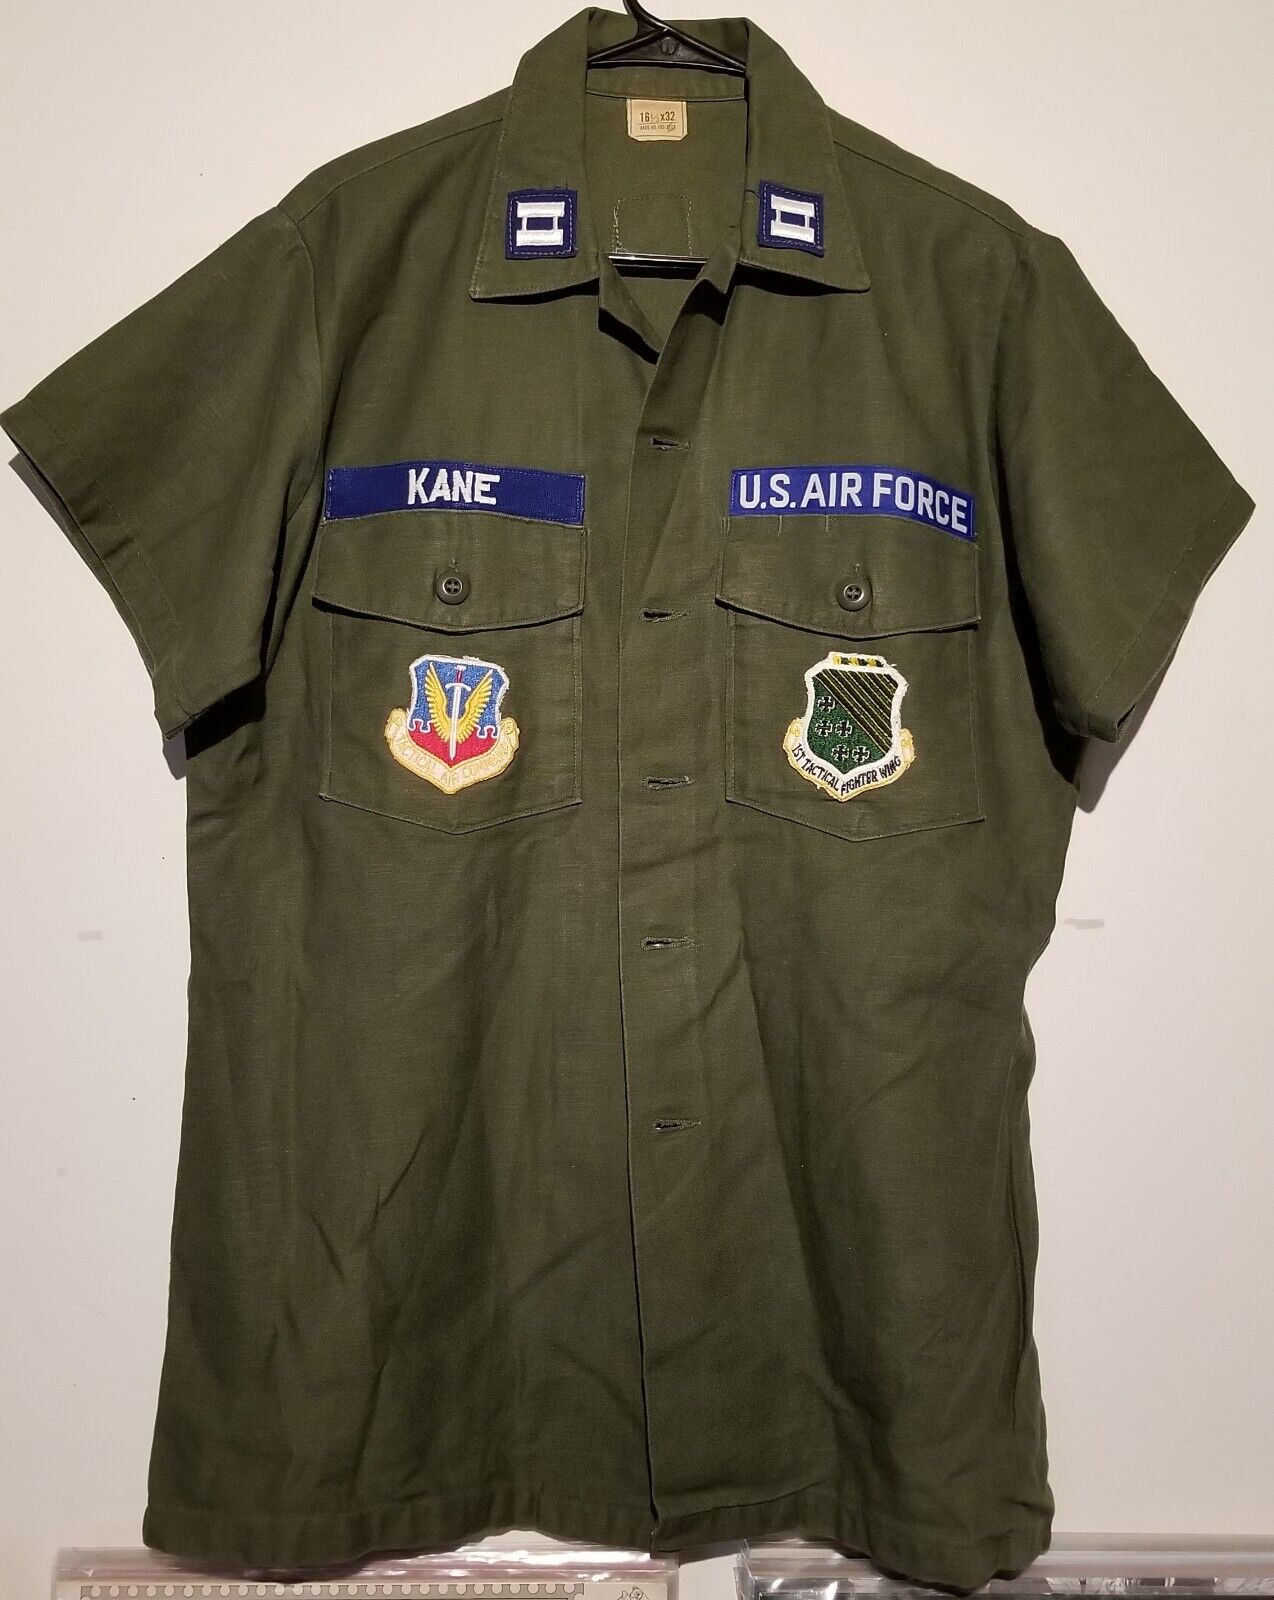 USAF OG 107 Cotton Sateen Shirt Size LARGE 16 1/2 x 32 Short Sleeve Vietnam War